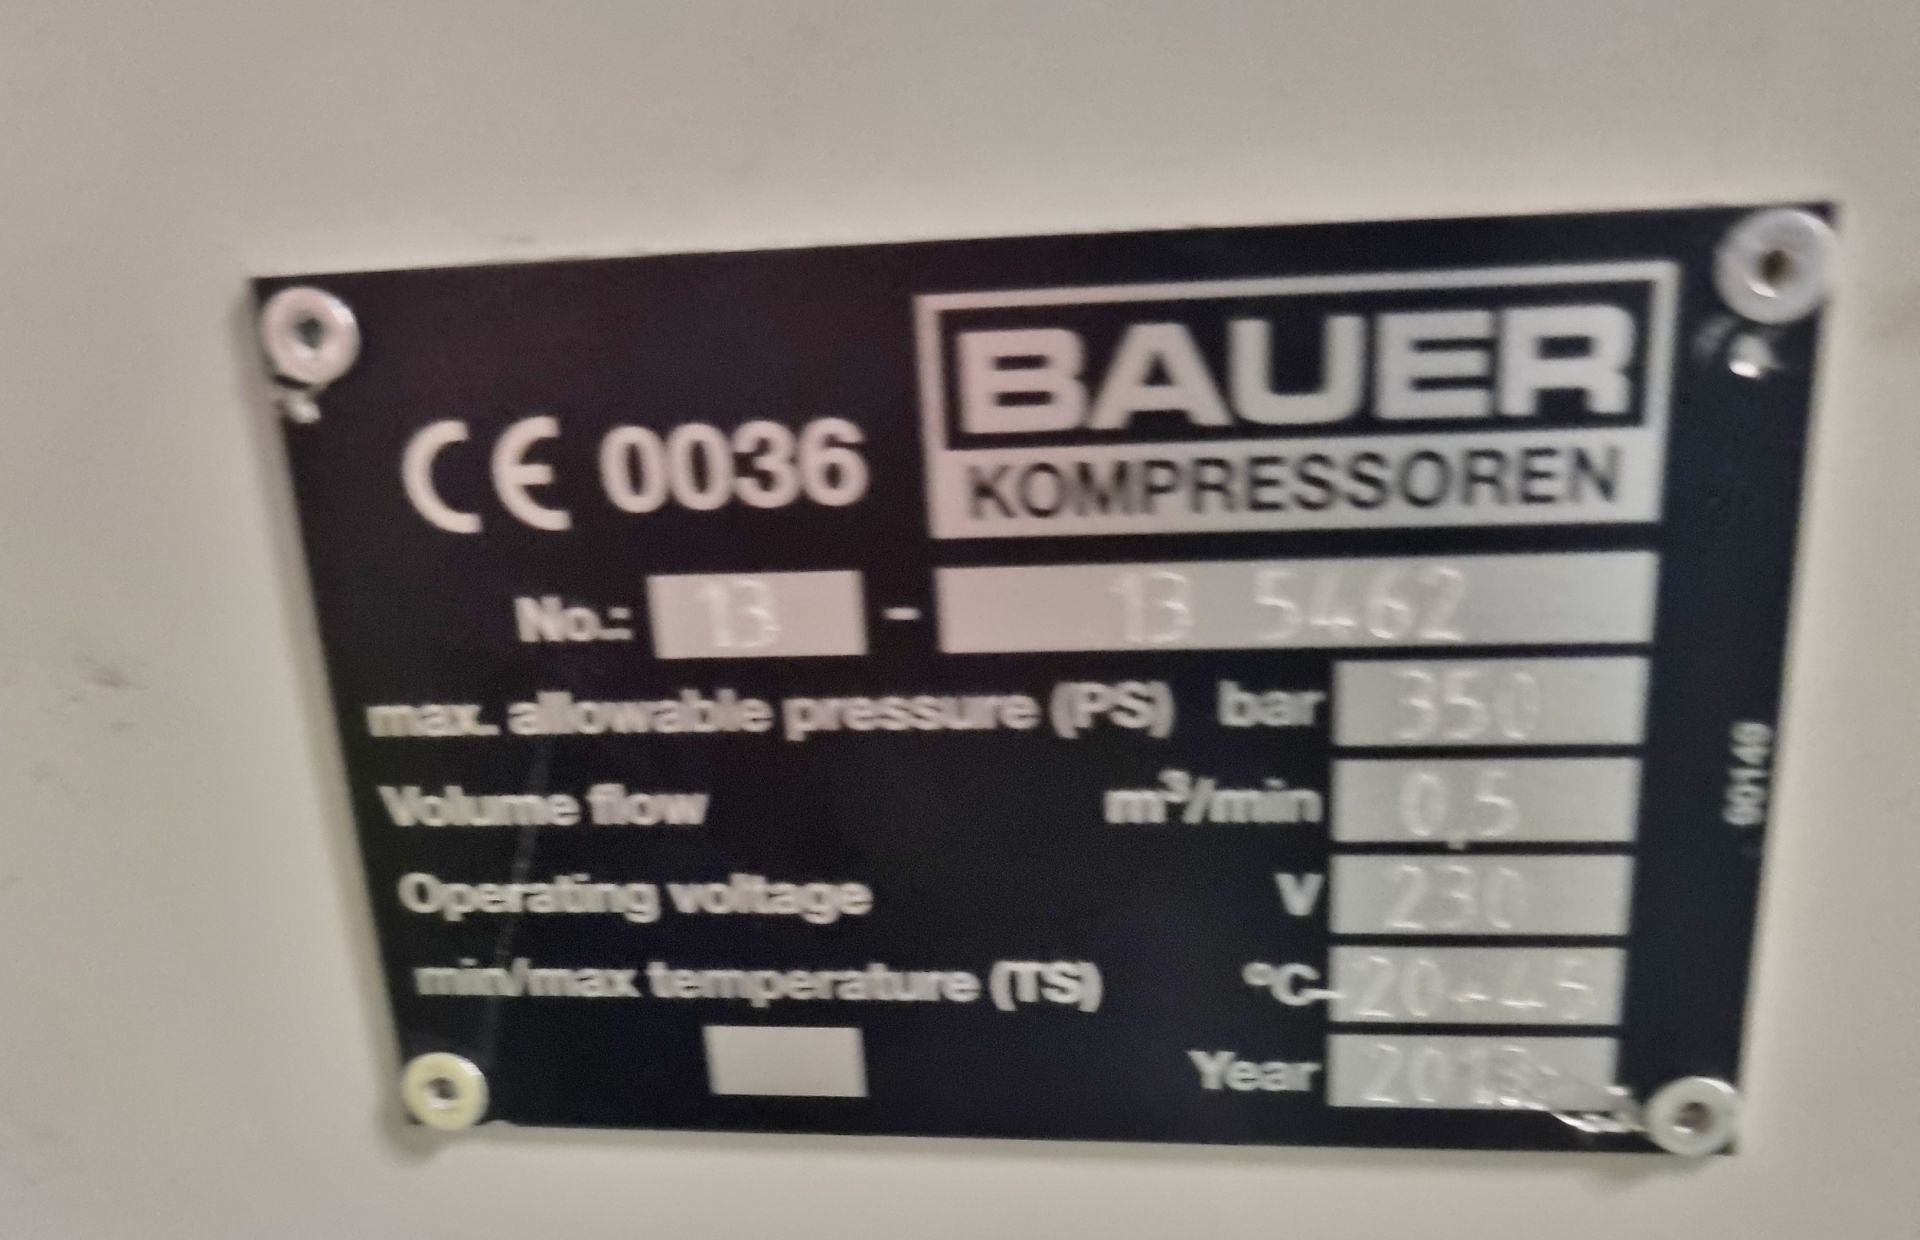 Bauer 100-2.2-H-M01 Compressor & Kompressoren CPF450-M01 cylinder refill system - Image 14 of 16